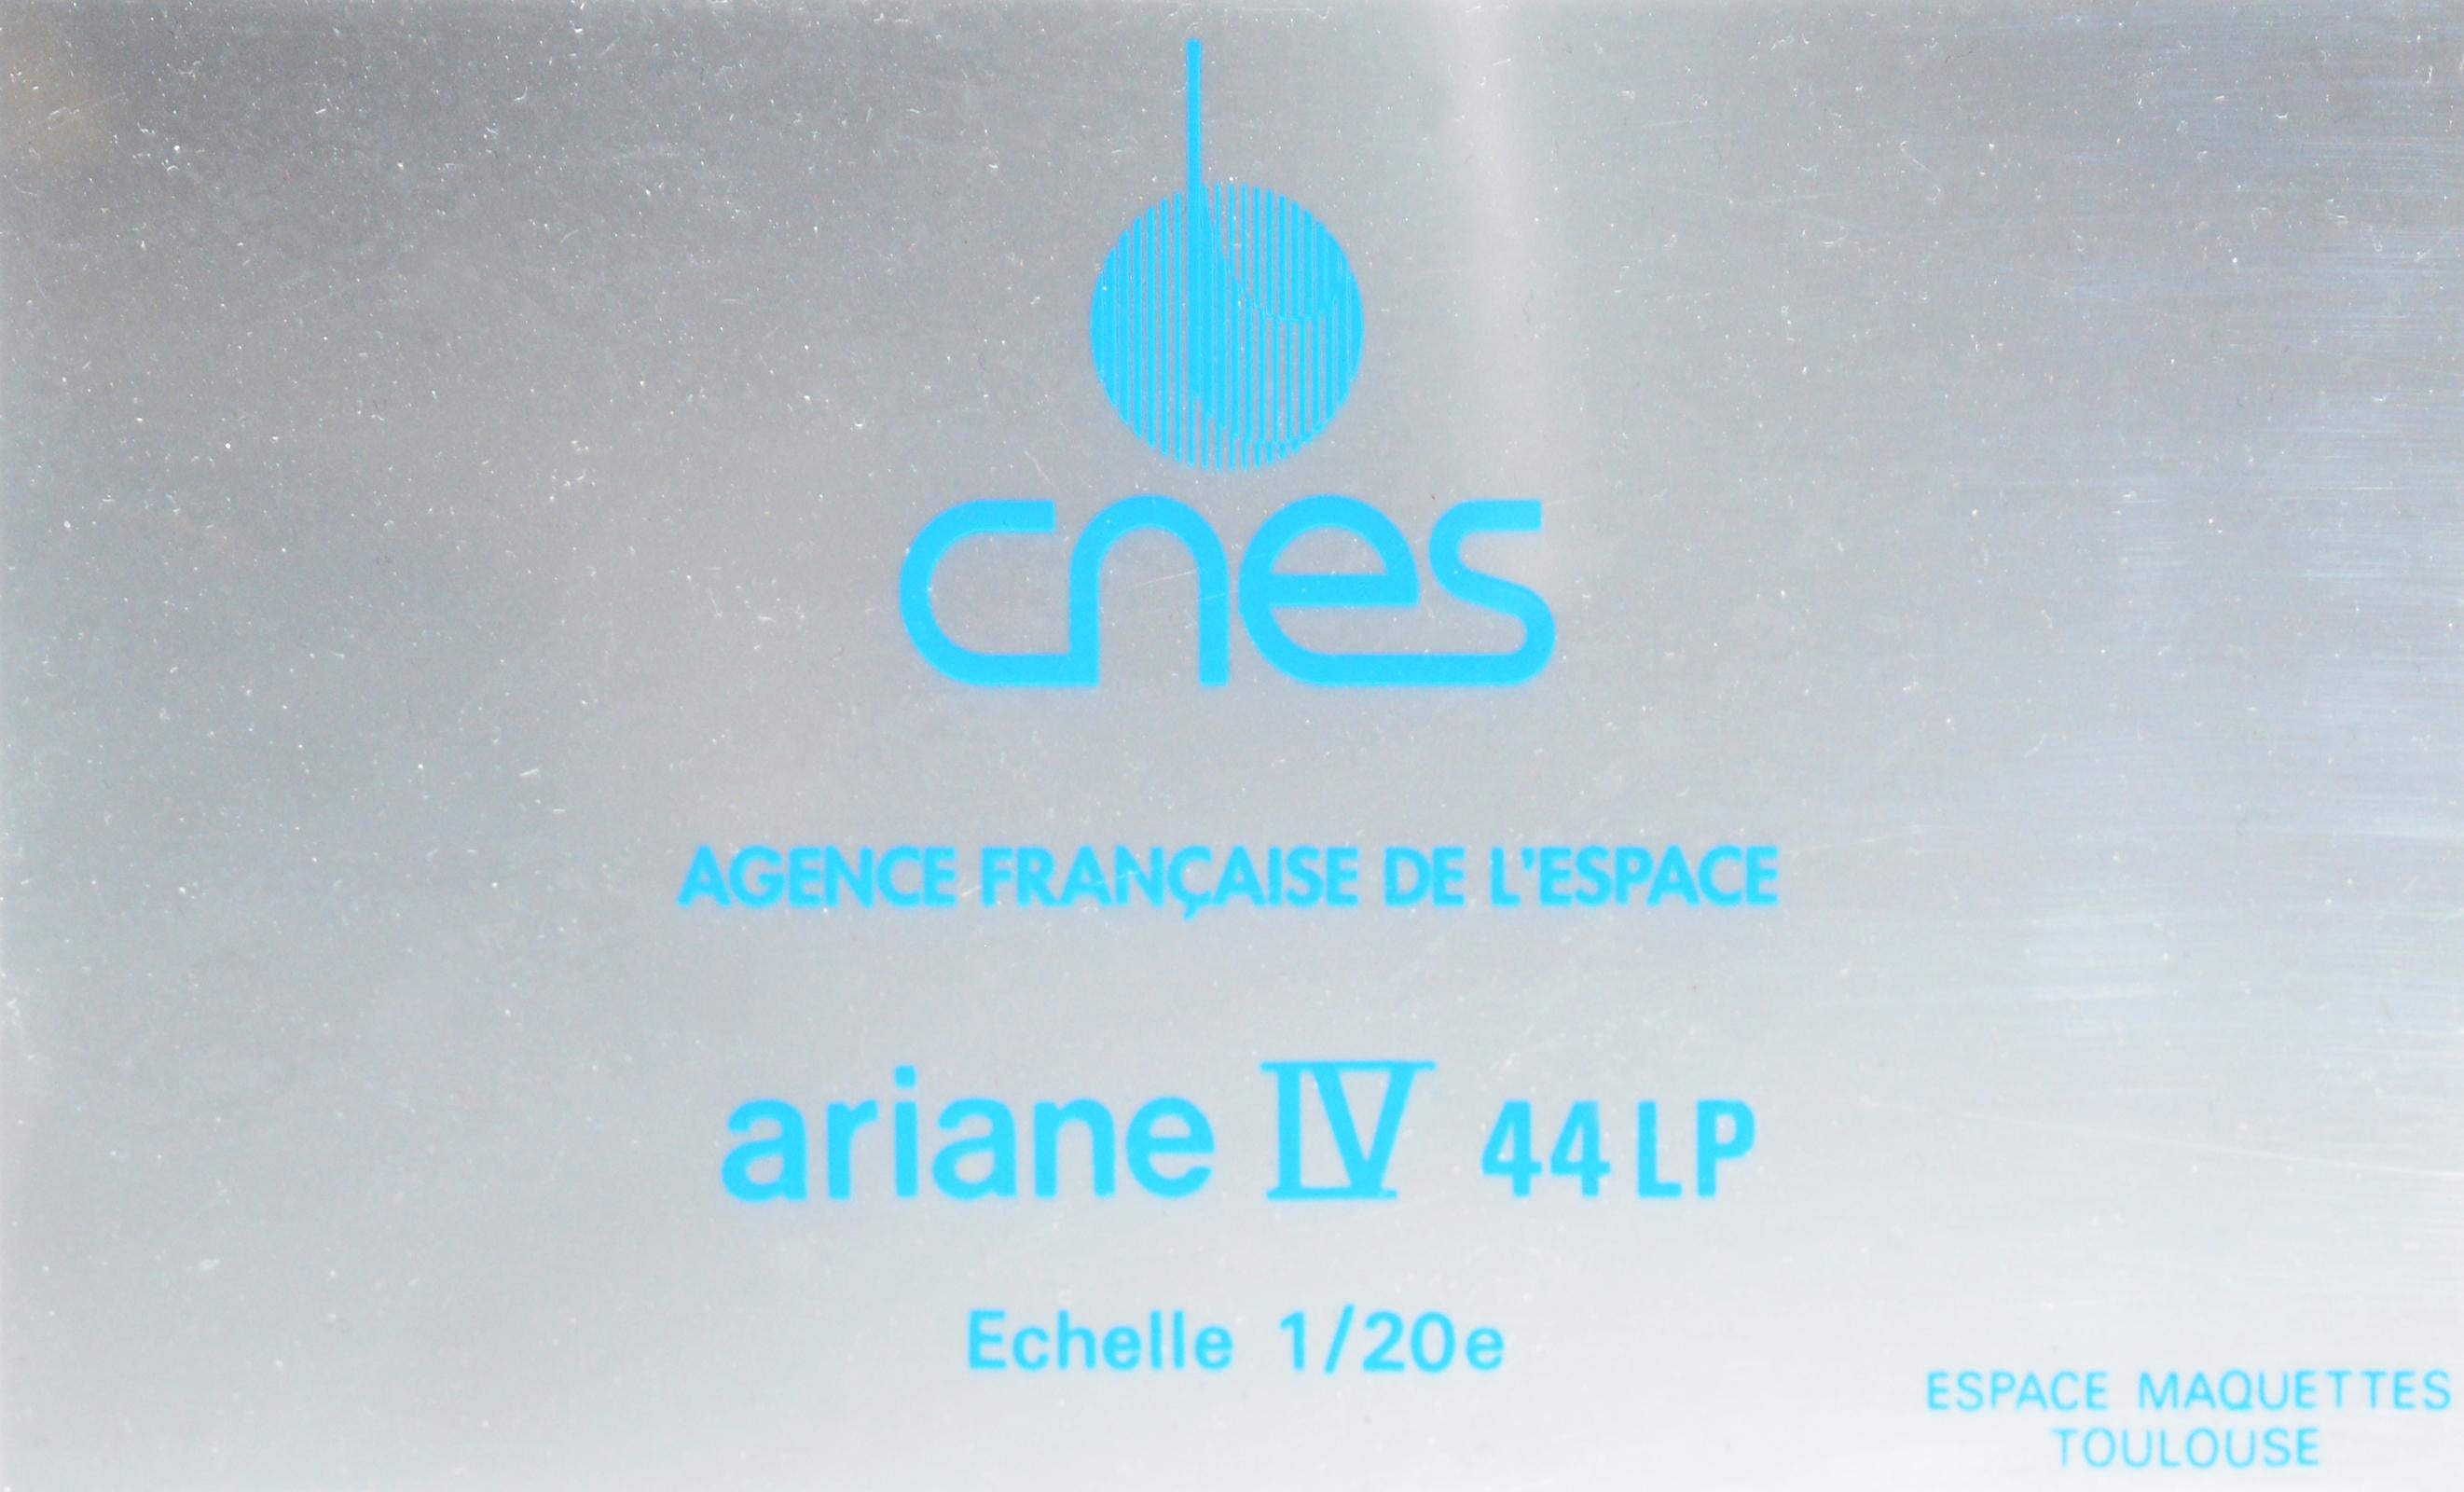 Resin Ariane IV 44lp Rocket Model on 1/20em Scale